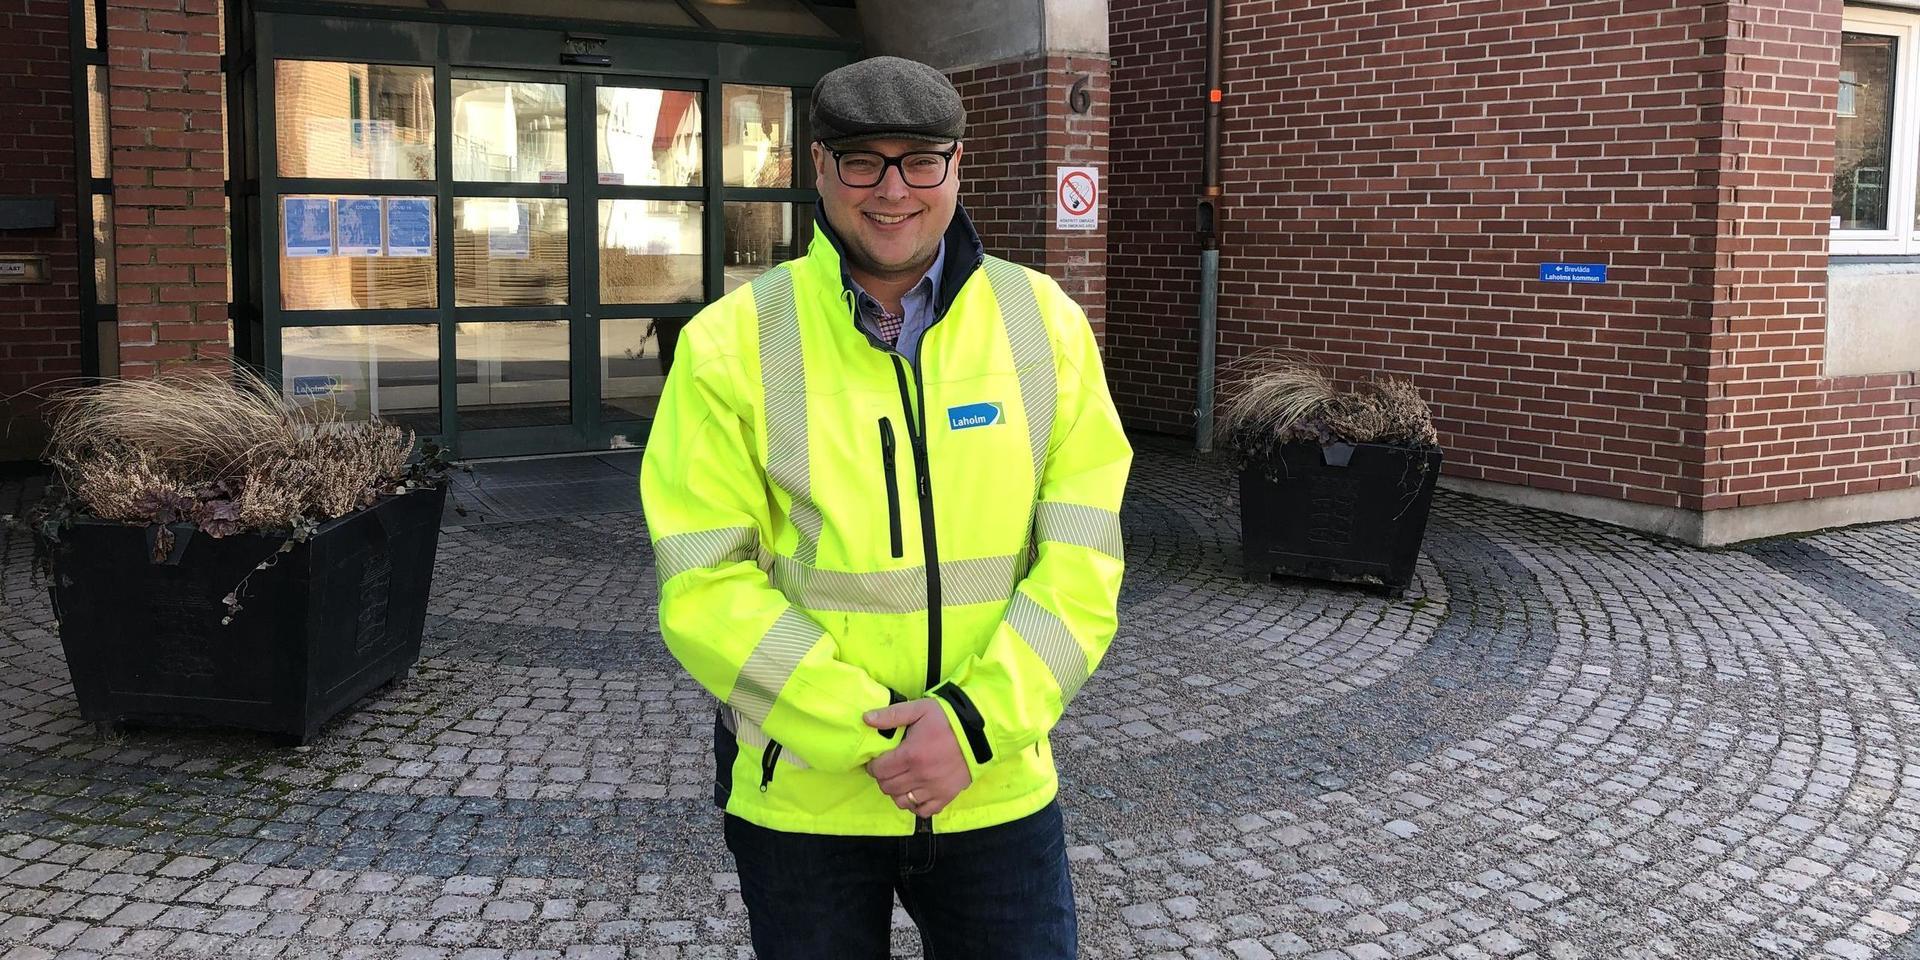 Snart väntar nya utmaningar för Kristofer Johansson i Örkelljunga kommun. 